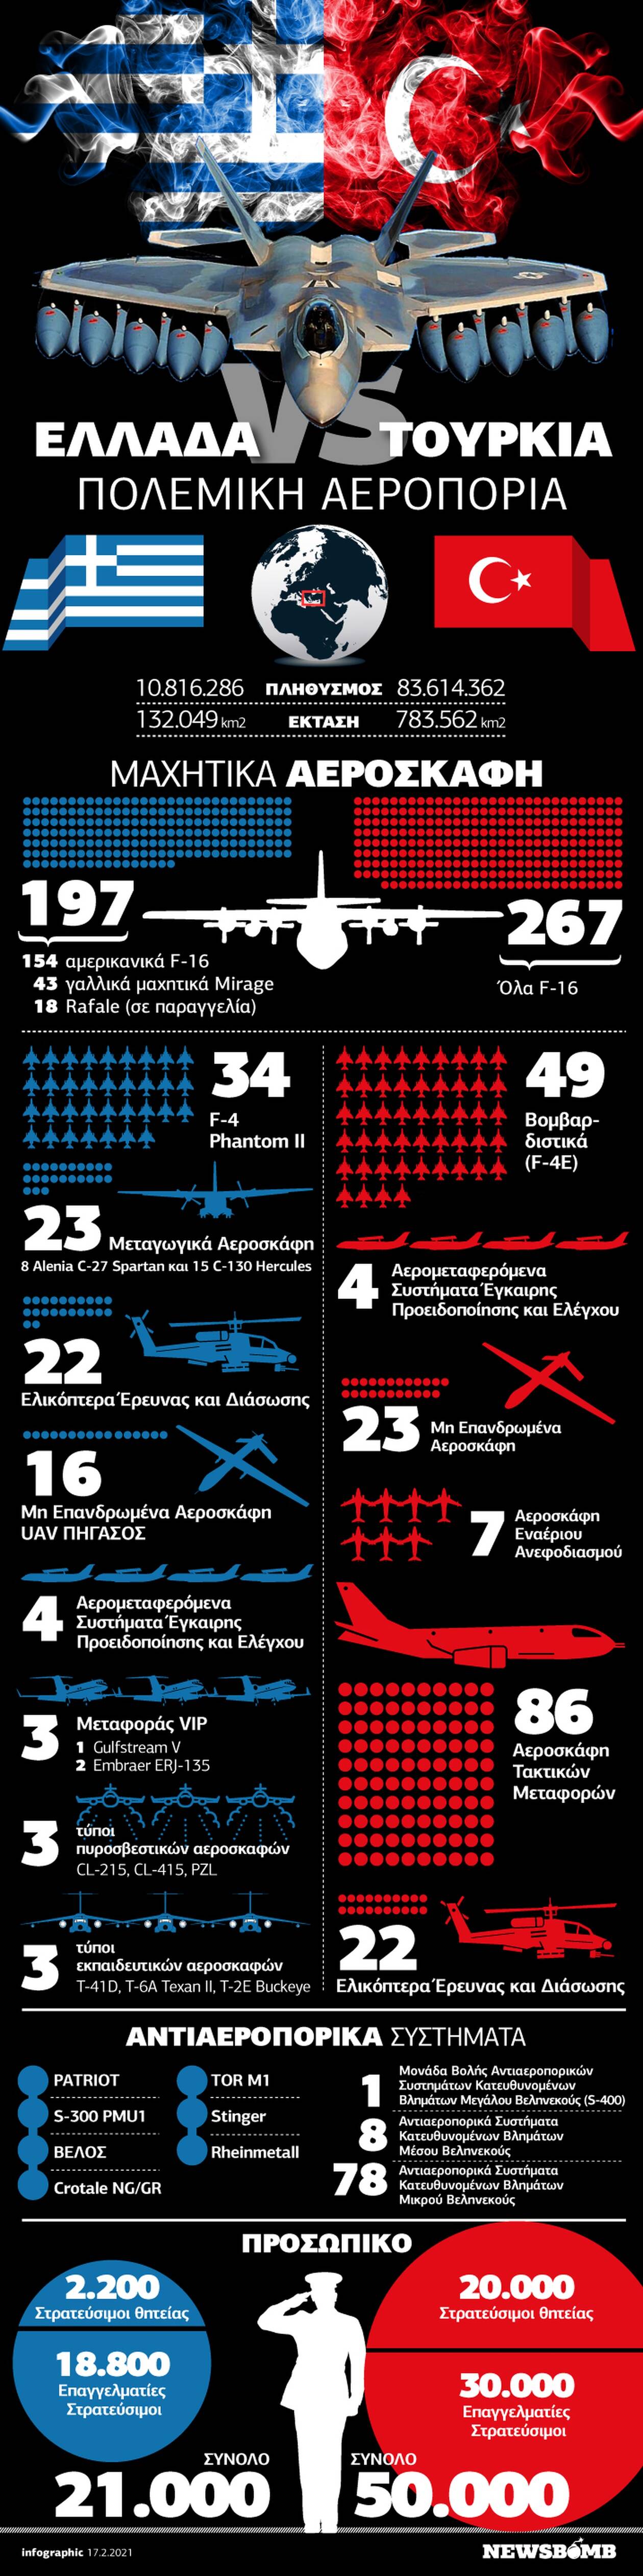 Ελλάδα VS Τουρκία: Ποια Πολεμική Αεροπορία είναι πιο ισχυρή; Δείτε το Infographic του Newsbomb.gr